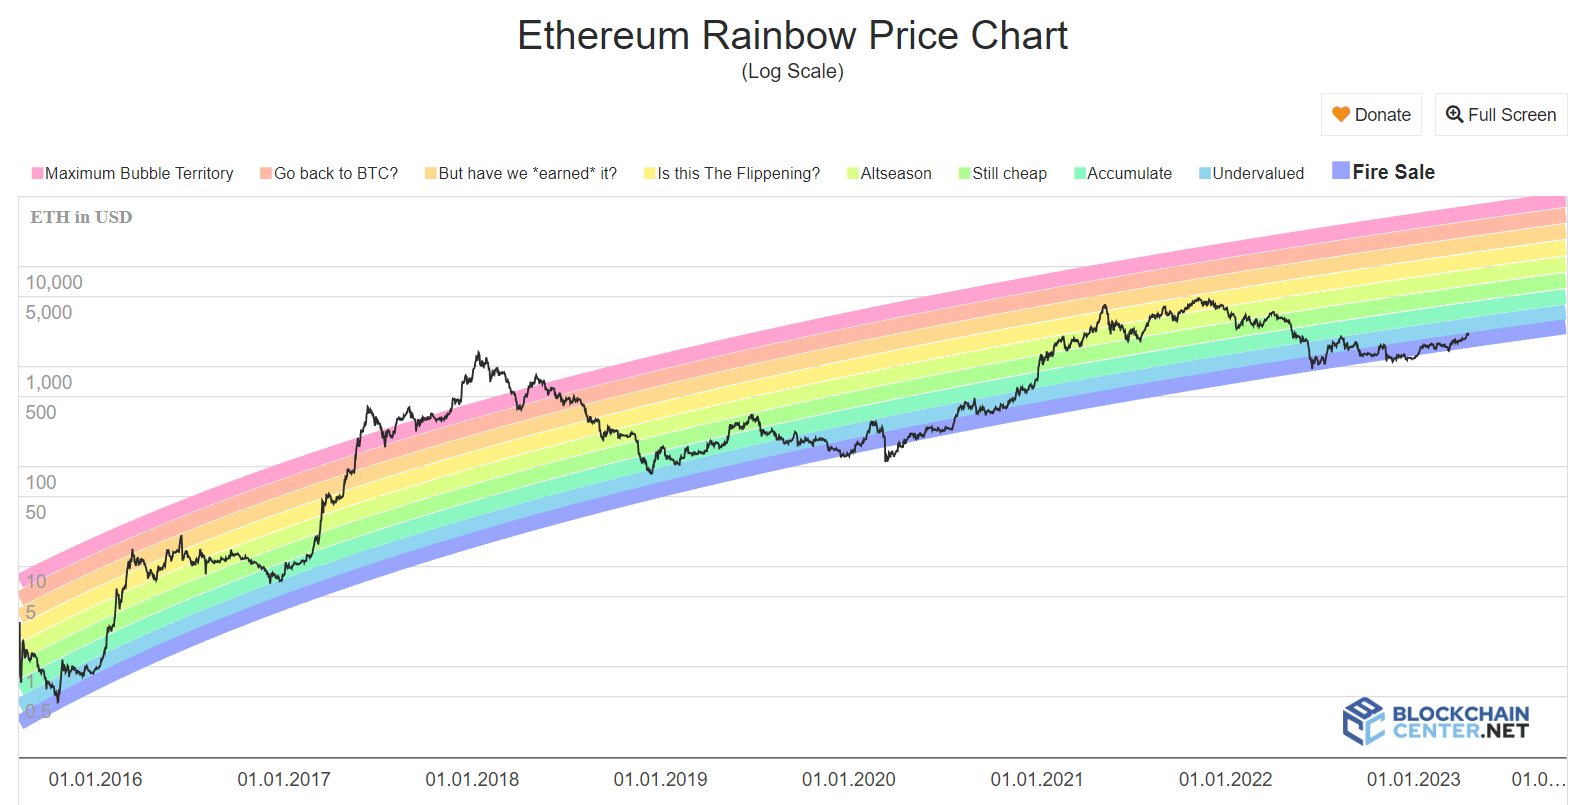 Ethereum gökkuşağı fiyat tablosu. Kaynak: BlockchainCenter